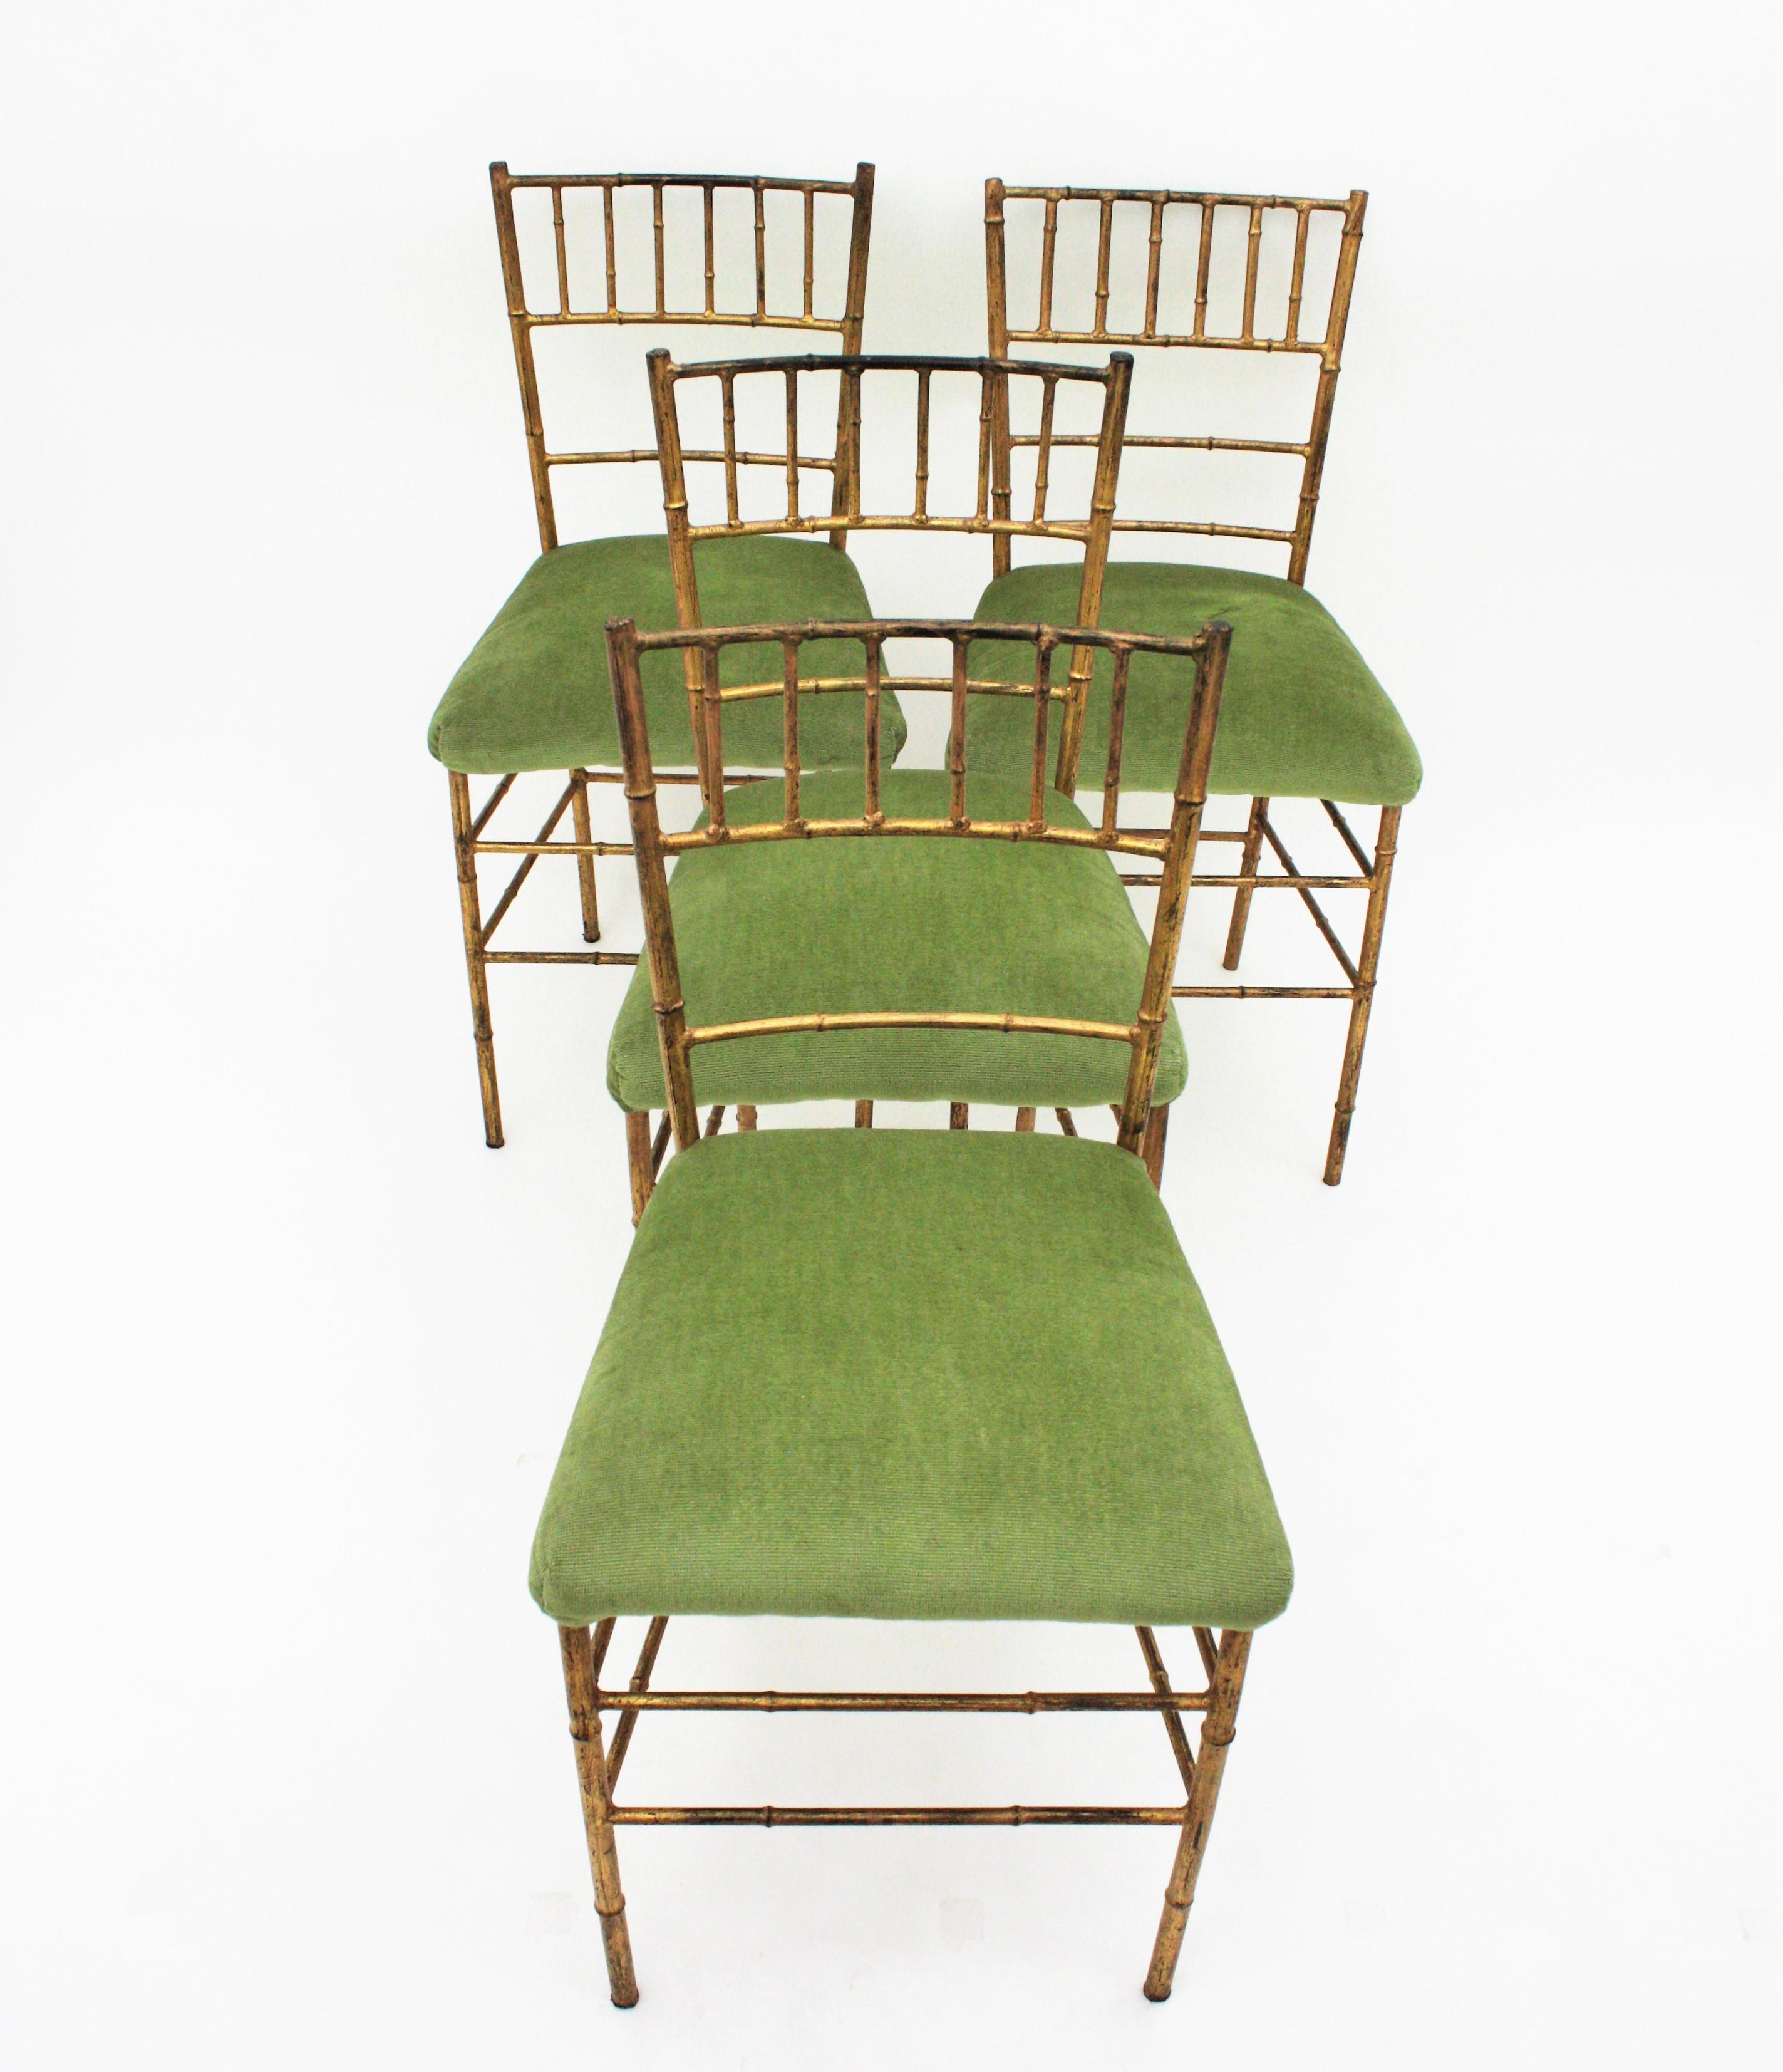 Ensemble de quatre chaises en faux bambou en fer doré à la feuille d'or, France, années 1940.
Bien construit. Ils ont une belle patine vieillie montrant leur dorure d'origine à la feuille d'or
A retapisser.
Le prix est fixé et vendu comme un